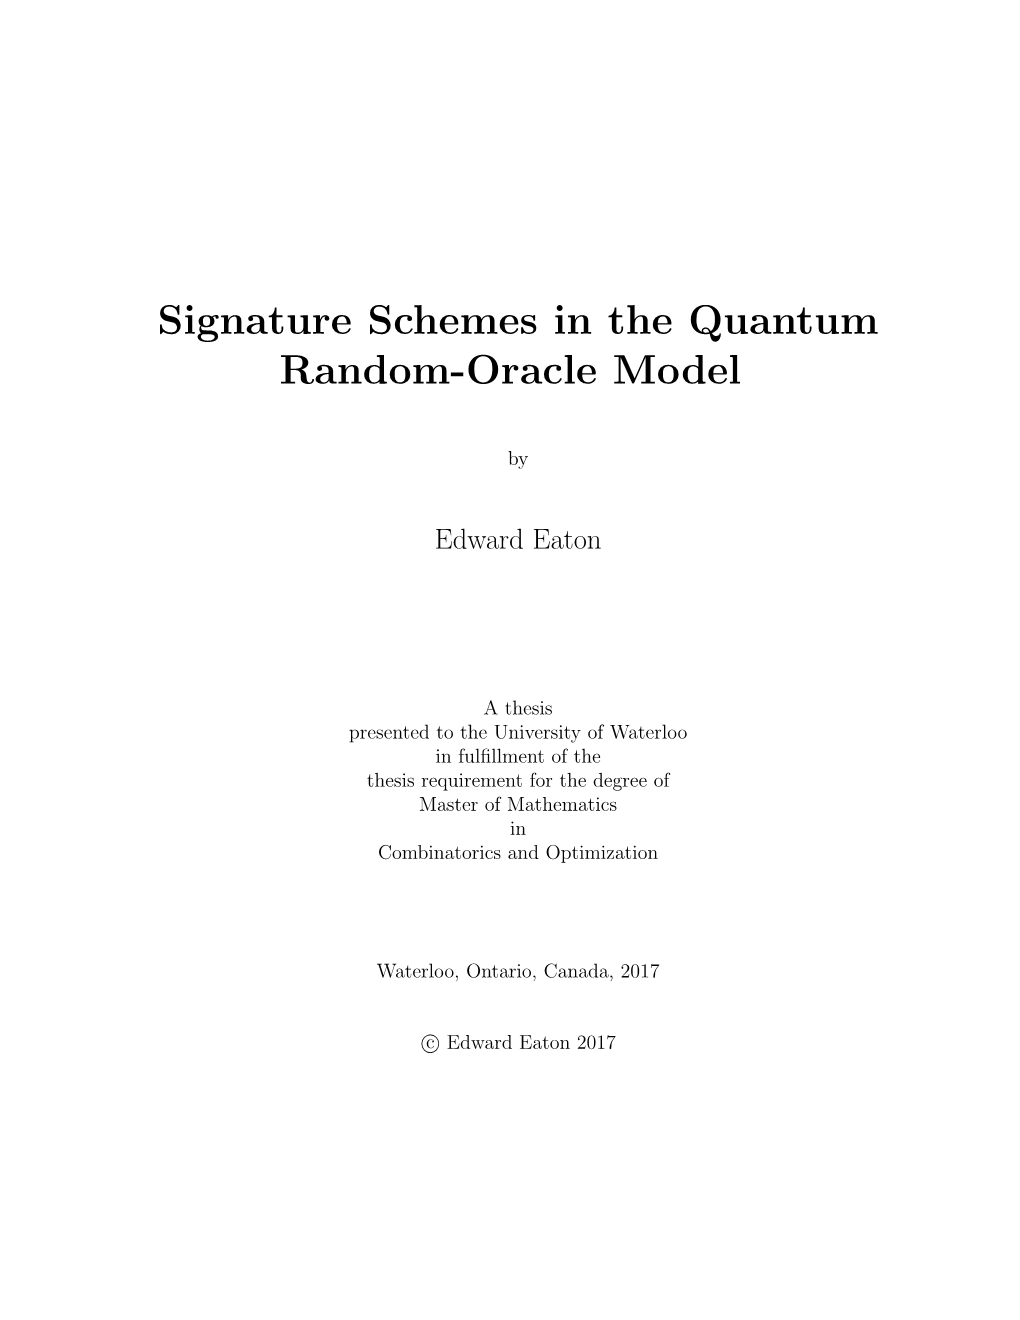 Signature Schemes in the Quantum Random-Oracle Model